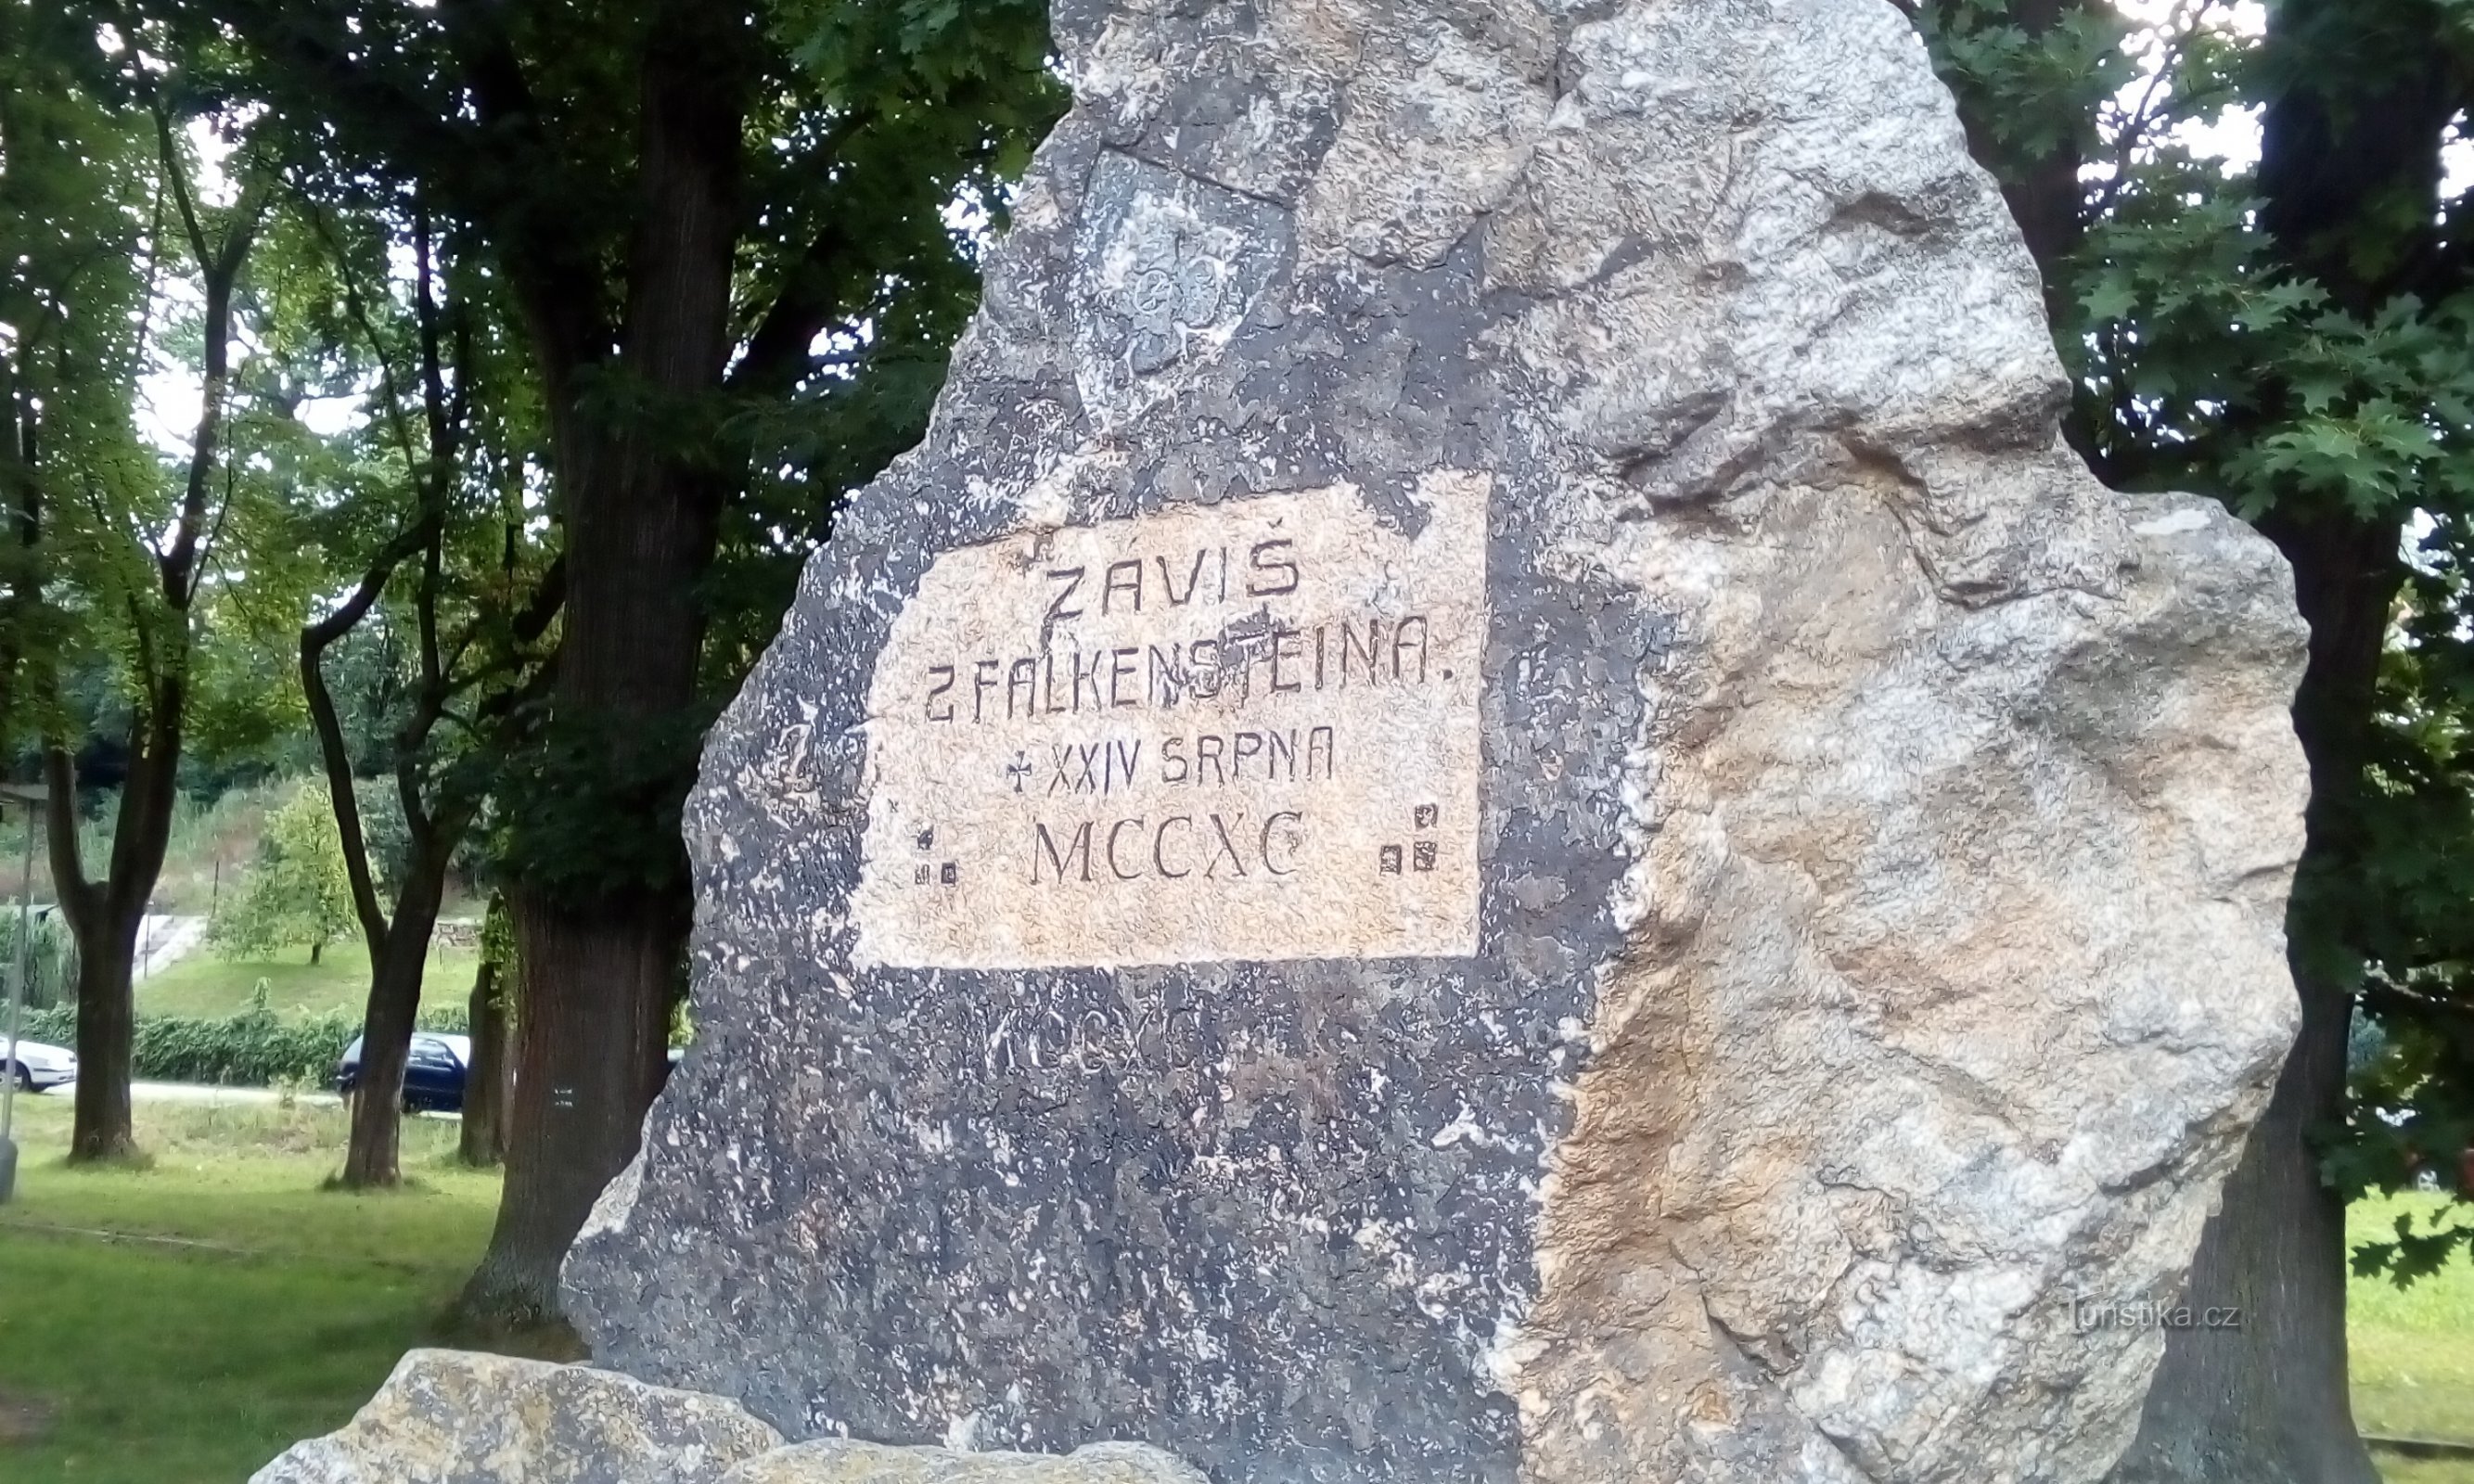 Denkmal für Závis von Falkenstein